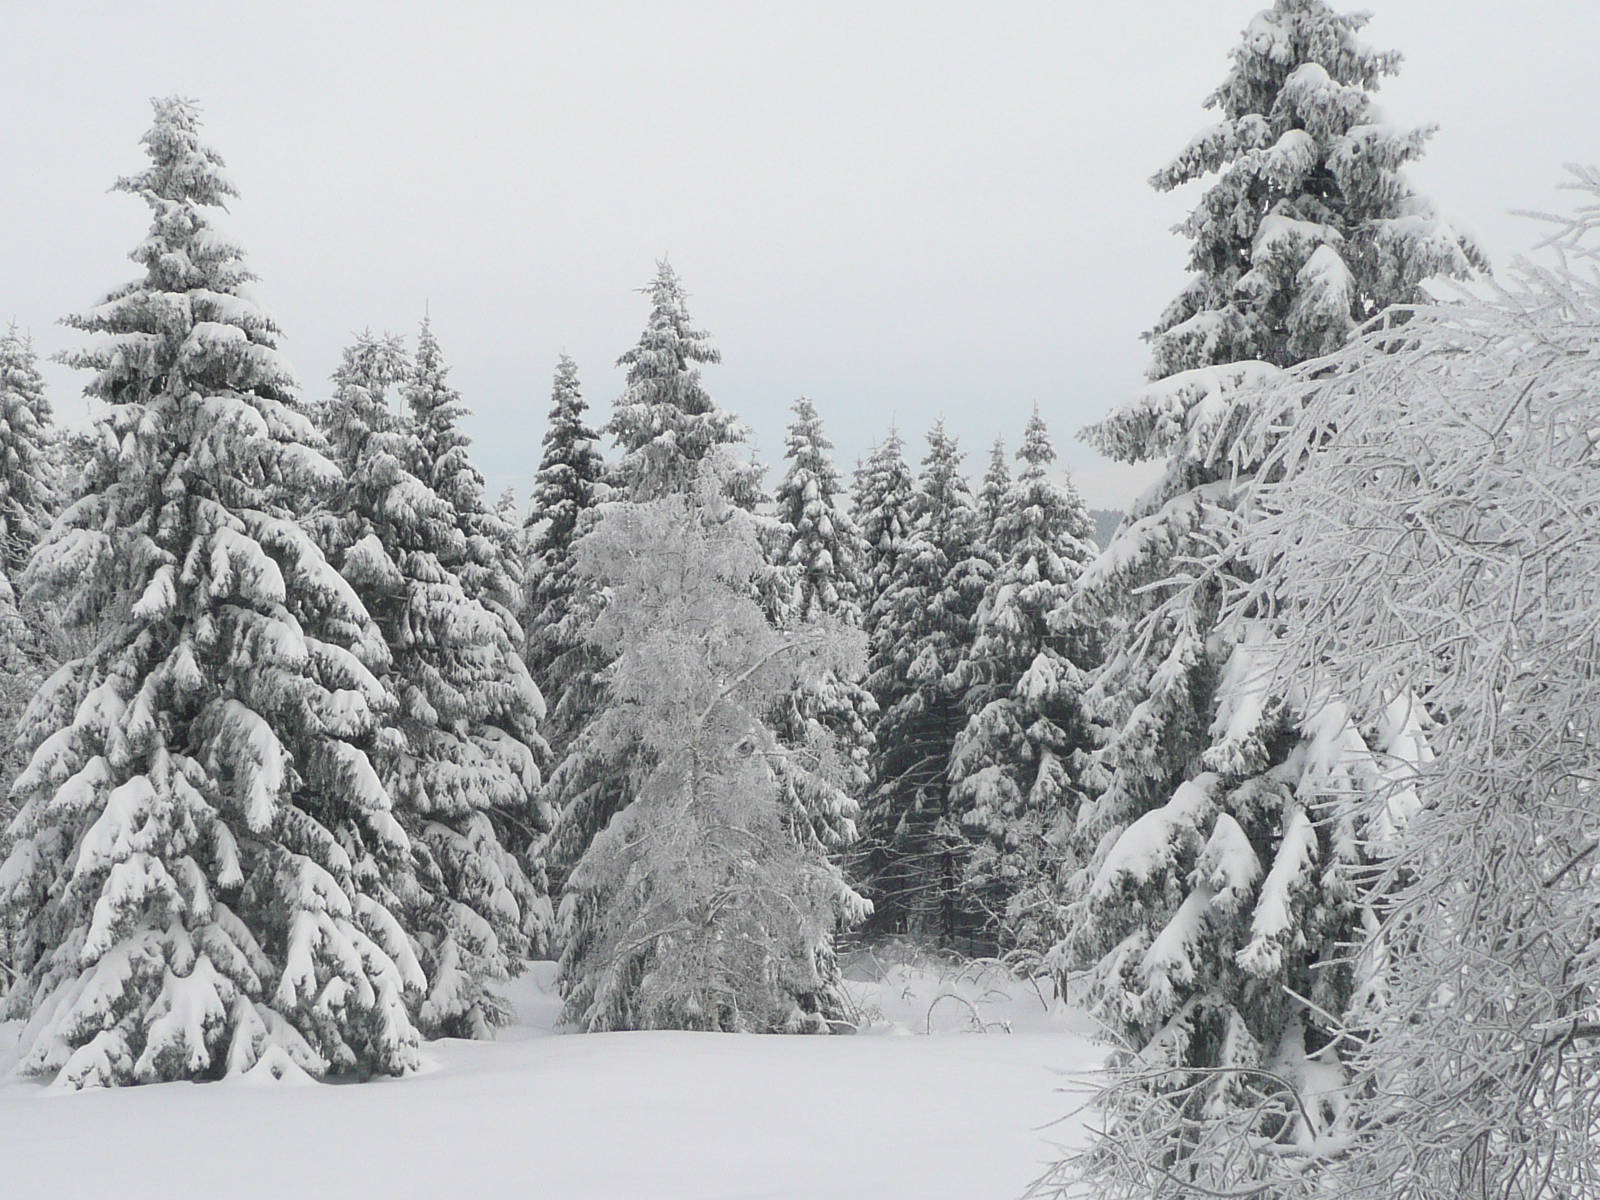 Lyrik erleben im winterlichen Wald